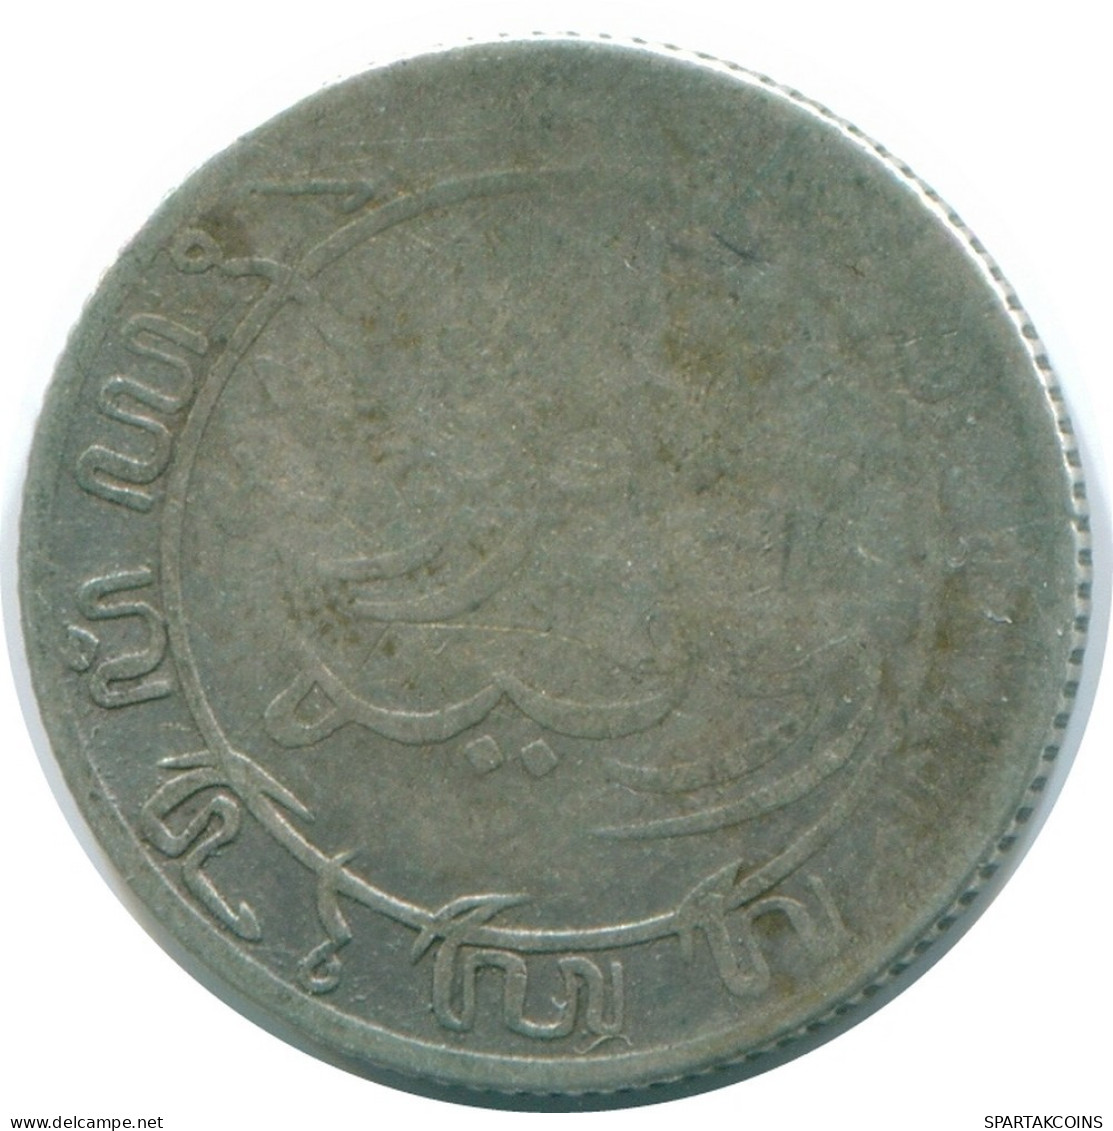 1/10 GULDEN 1906 INDIAS ORIENTALES DE LOS PAÍSES BAJOS PLATA #NL13221.3.E.A - Dutch East Indies